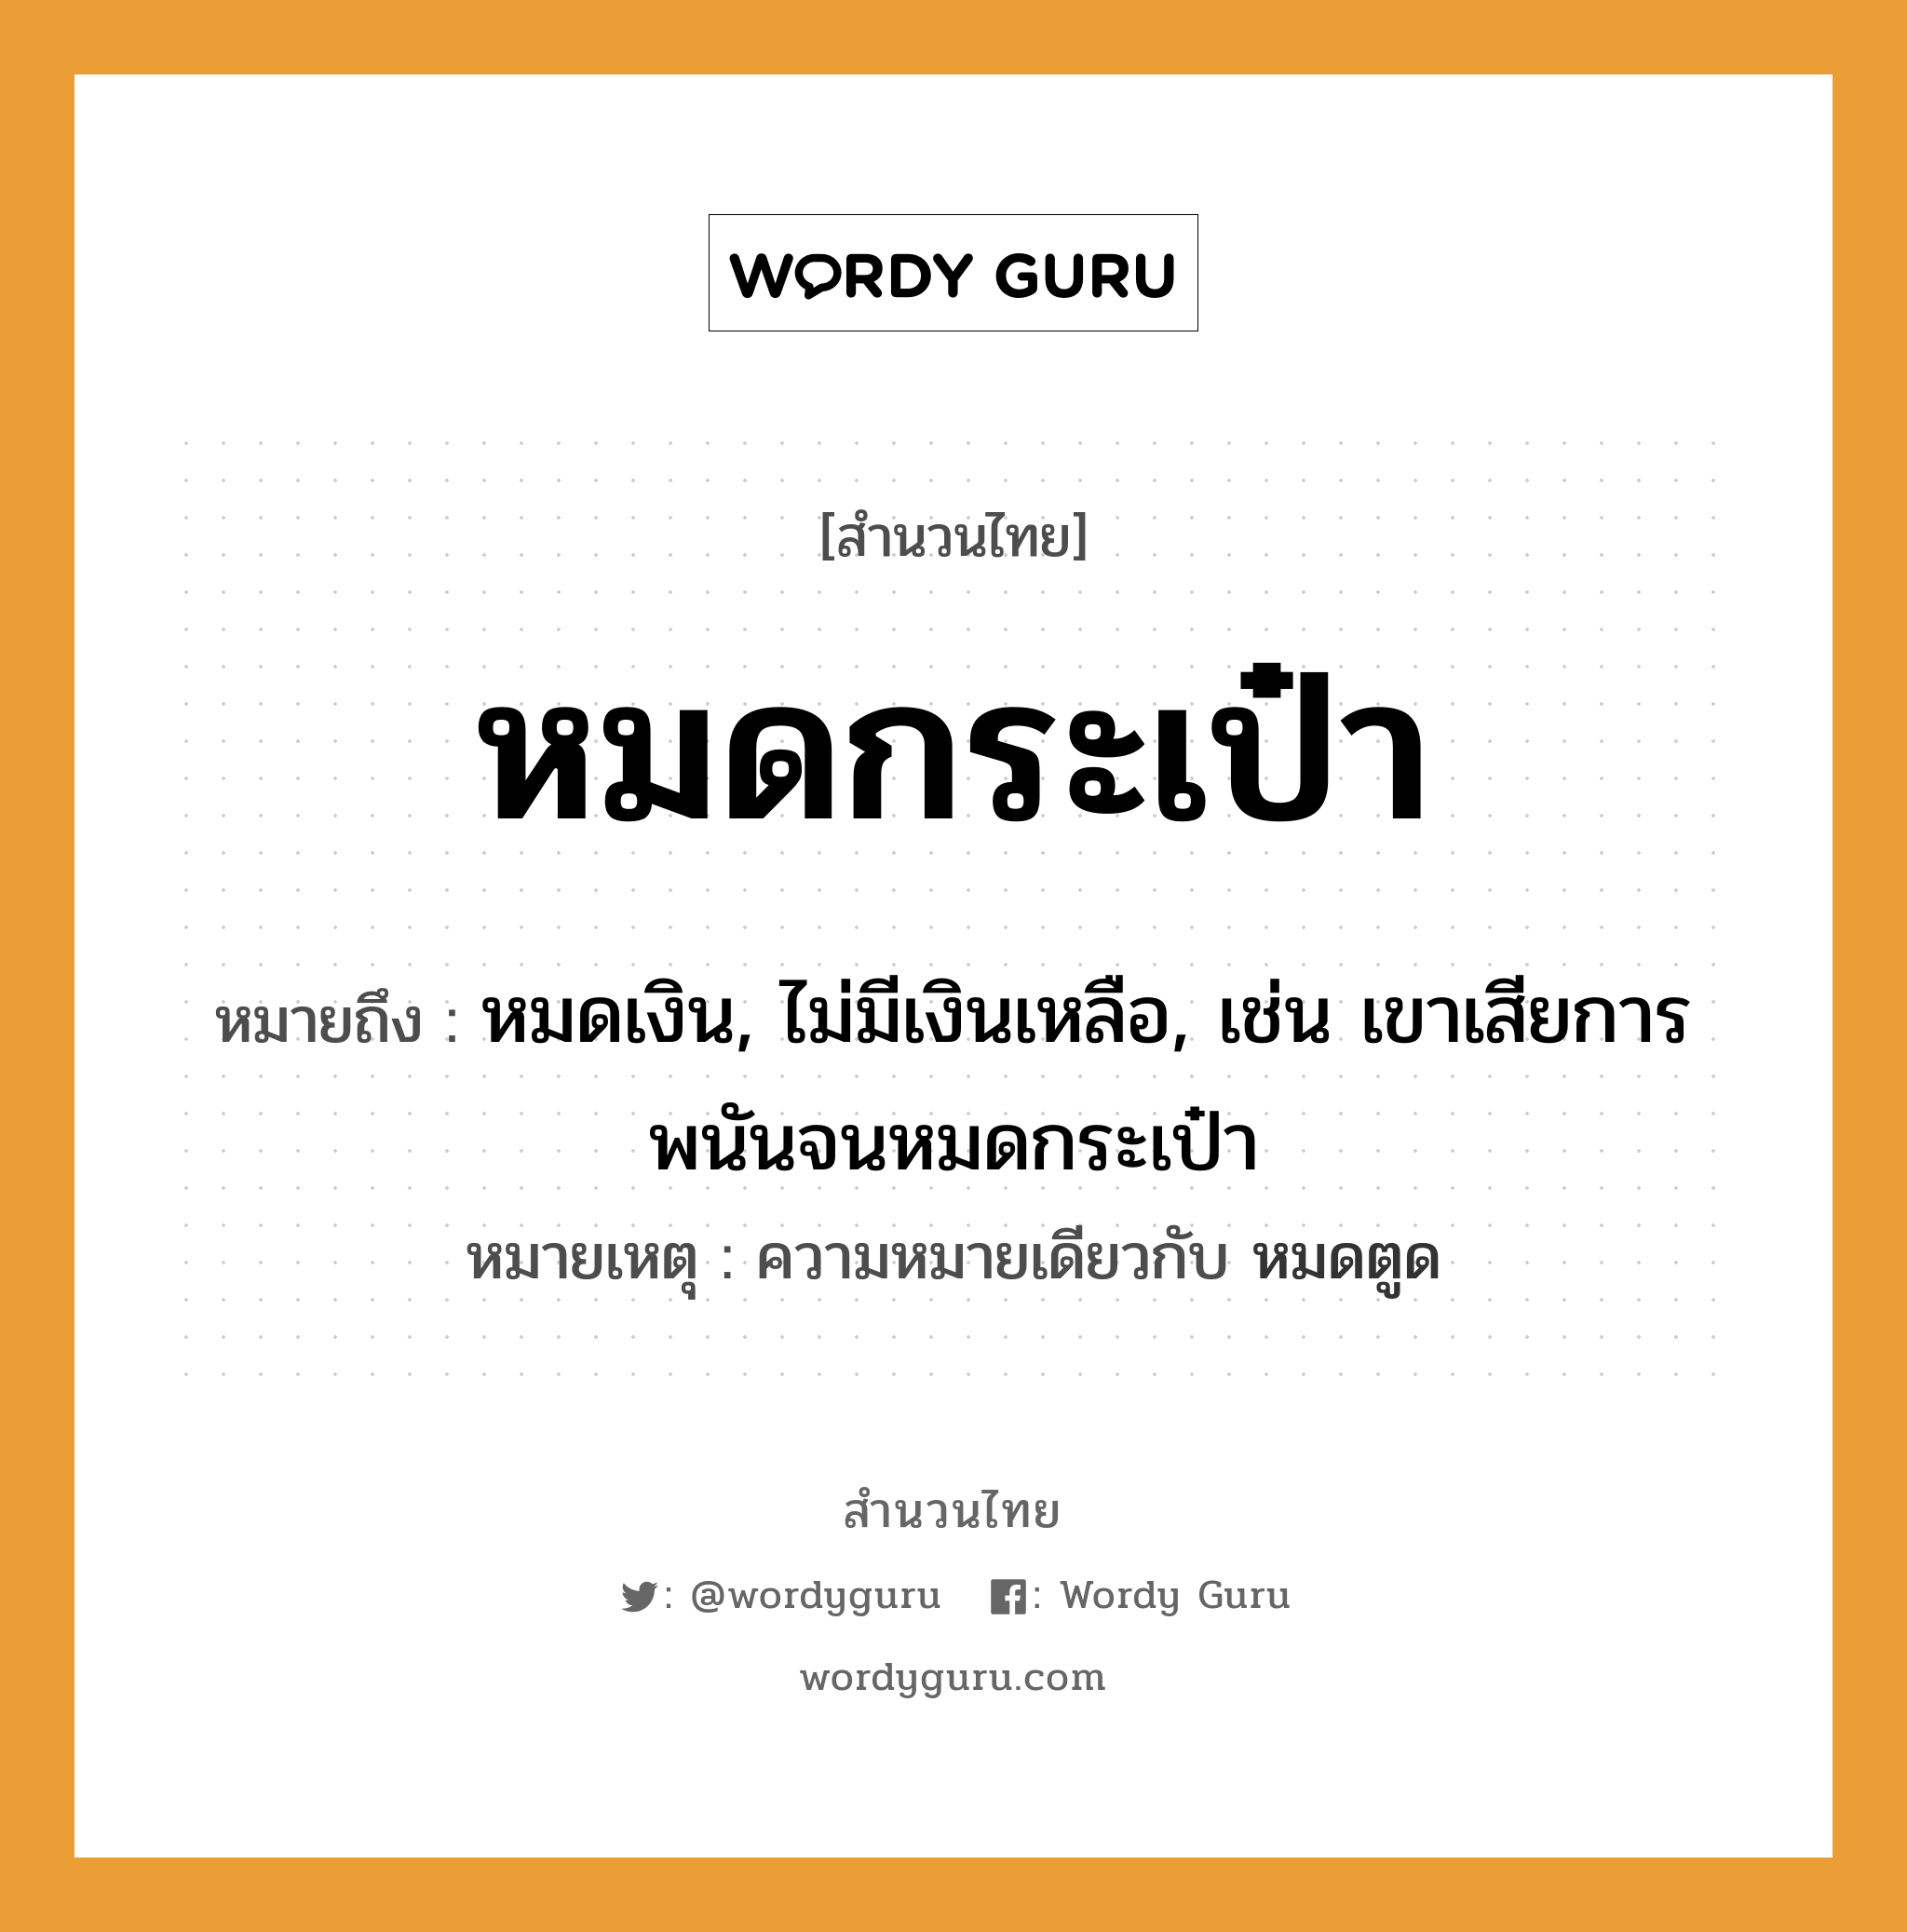 สำนวนไทย: หมดกระเป๋า หมายถึง?, สํานวนไทย หมดกระเป๋า หมายถึง หมดเงิน, ไม่มีเงินเหลือ, เช่น เขาเสียการพนันจนหมดกระเป๋า หมายเหตุ ความหมายเดียวกับ หมดตูด